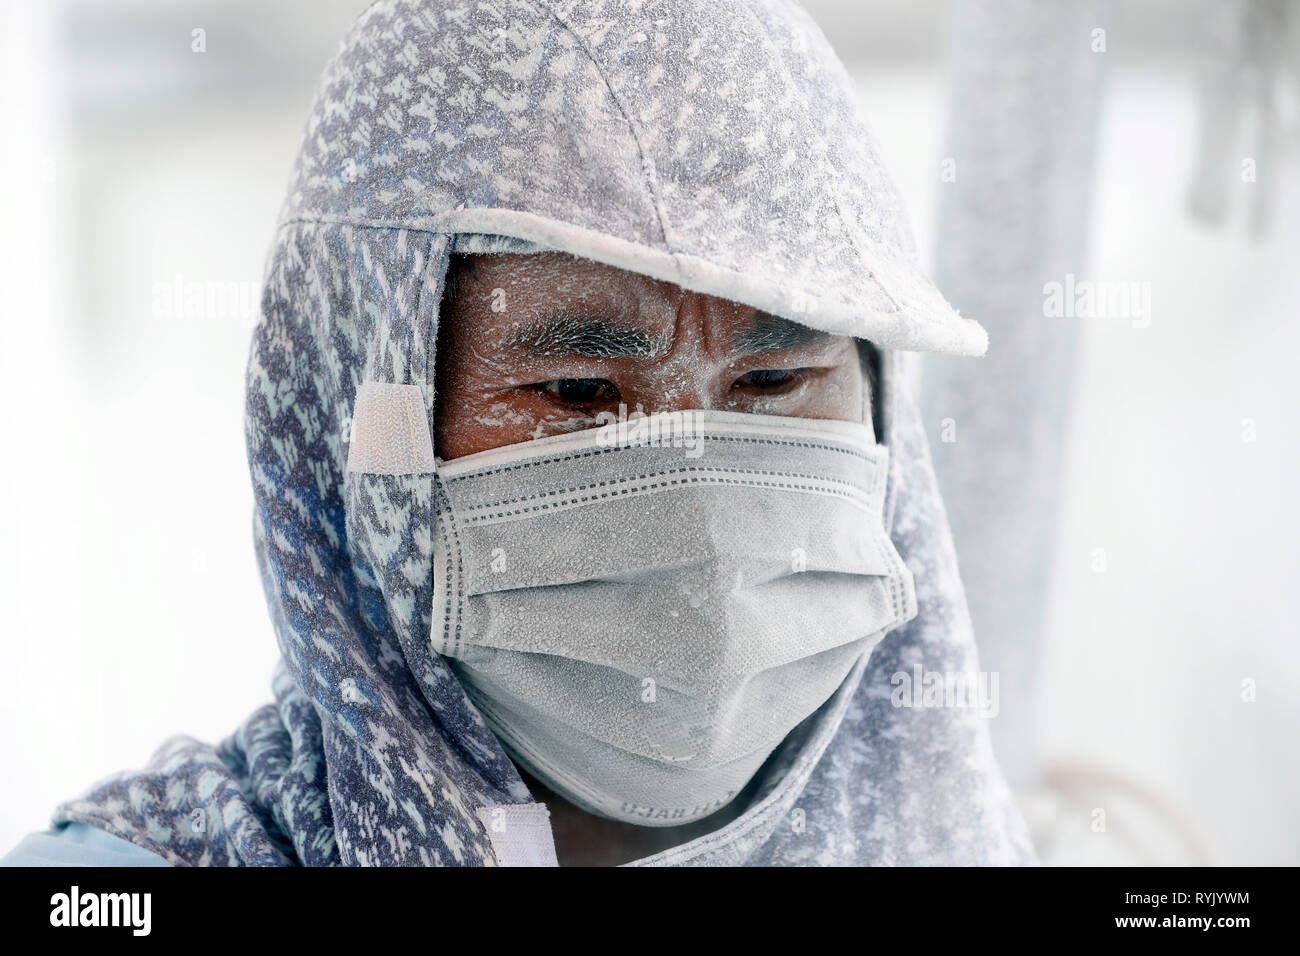 Sitio en construcción. Trabajador utilizando Máscara de protección. Vung Tau. Vietnam. Foto de stock